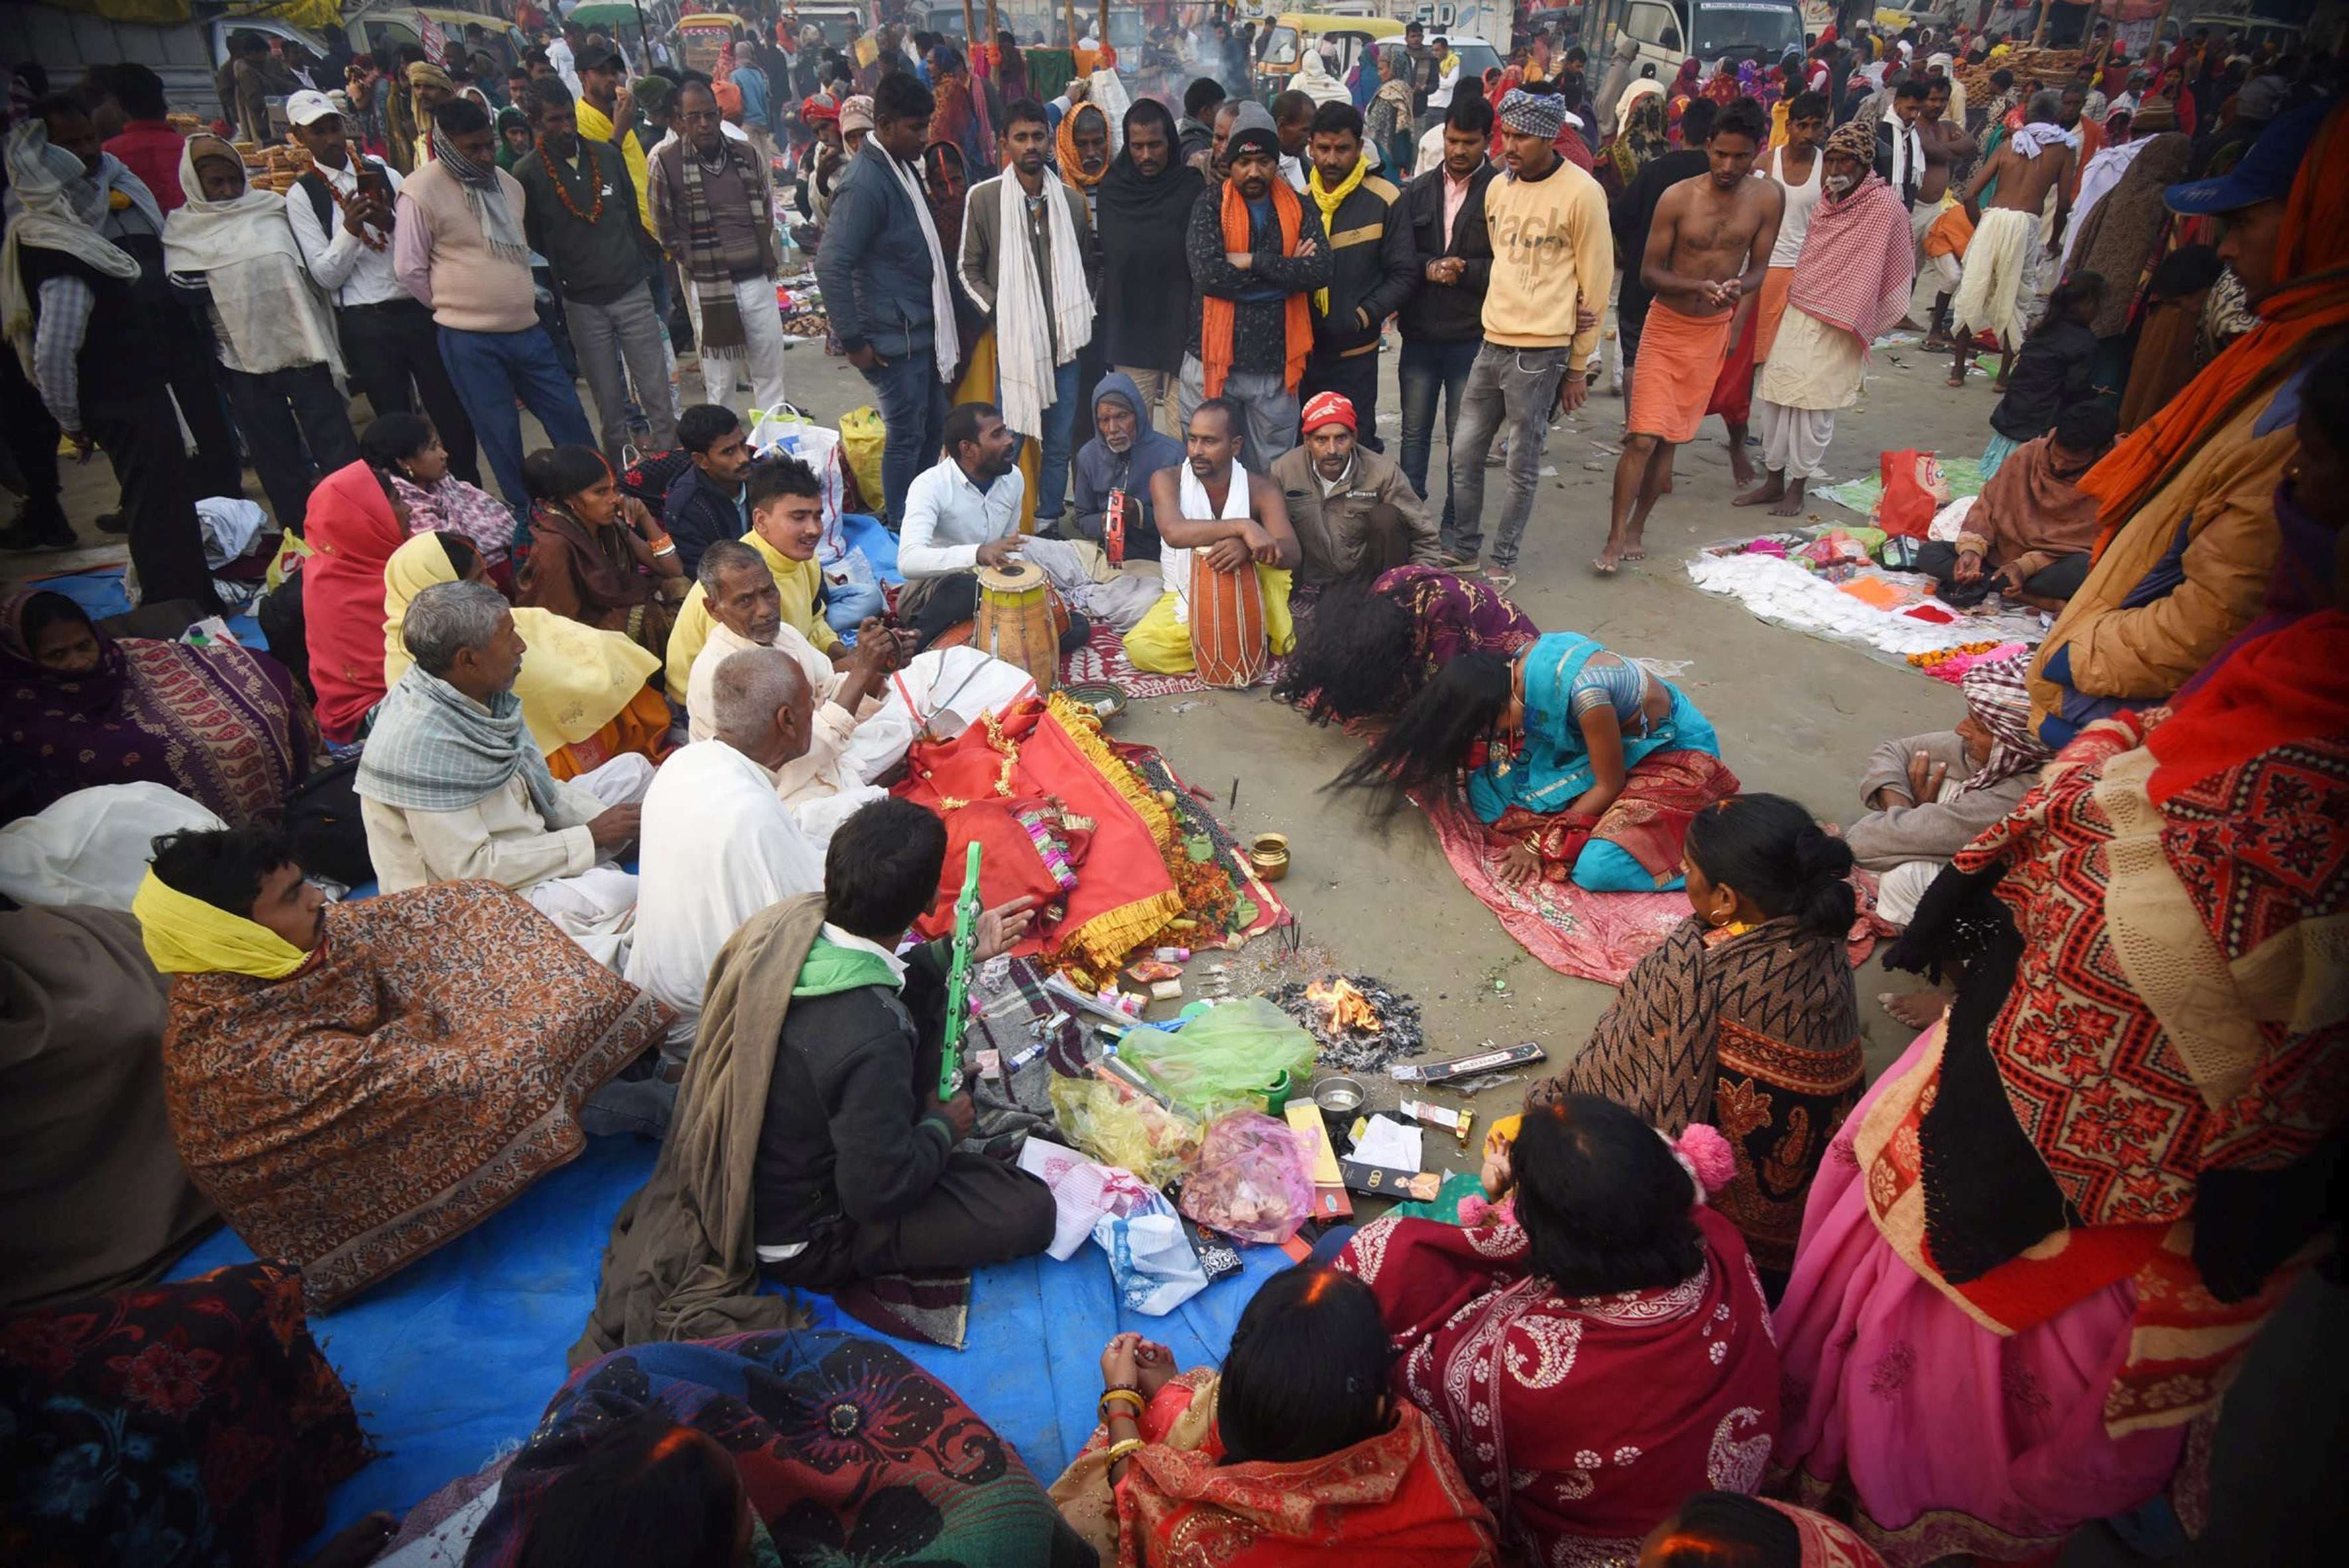 Bihar News: कार्तिक पूर्णिमा के अवसर पर सोमवार को पटना में श्रद्धालुओं ने गंगा नदी में पवित्र डुबकी लगाने के बाद पूजा-अर्चना की। गंगा स्नान के बाद दीप दान करना दस यज्ञ के बराबर माना जाता है। देव दीपावली के दिन अन्न, धन, वस्त्र और घी आदि दान करने से कई गुना फल मिलता है। श्रद्धालु पूर्णिमा के दिन गंगा स्नान के बाद श्री सत्यनारायण भगवान की कथा का श्रवण, गीता पाठ, विष्णु सहस्त्रनाम का पाठ व 'ॐ नमो भगवते वासुदेवाय' का जप करके पापमुक्त-कर्जमुक्त होकर भगवान विष्णु की कृपा पाएंगे। स्नान के बाद अर्घ्य, तर्पण, जप-तप, पूजन, कीर्तन और दान करने से स्वयं भगवान विष्णु पापों से मुक्त करके जीव को शुद्ध कर देते हैं।